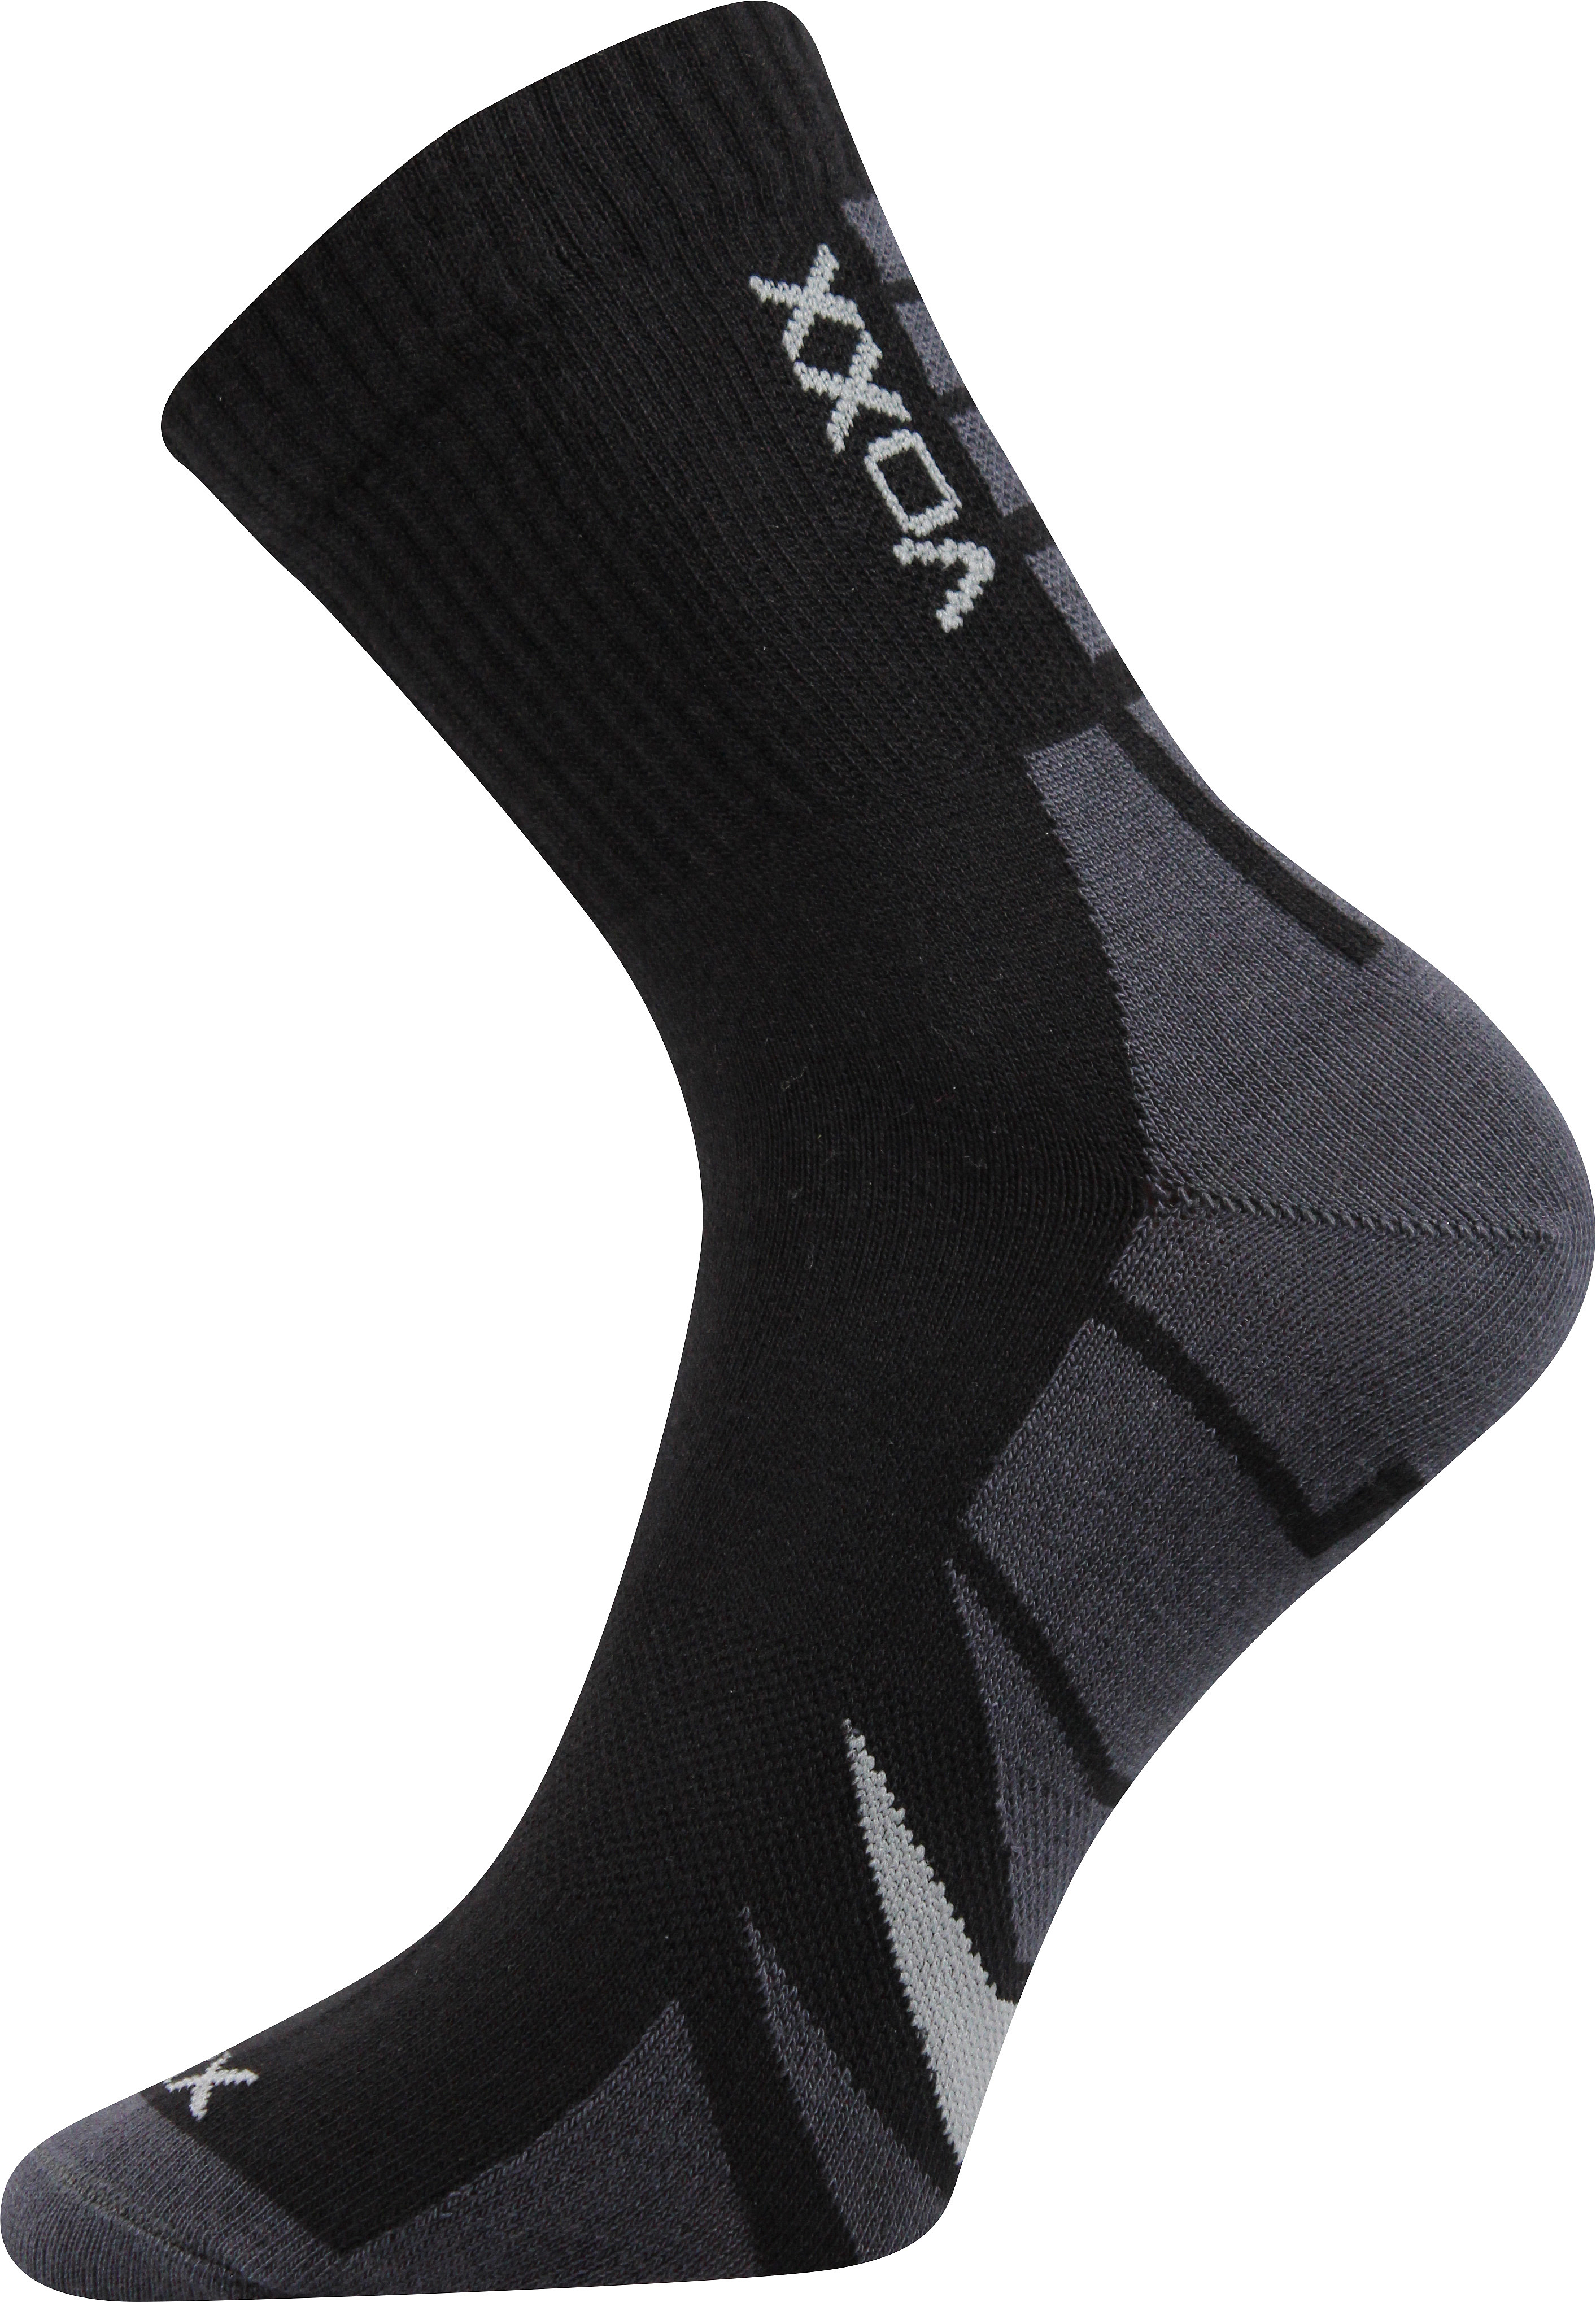 Ponožky sportovní Voxx Hermes - černé-šedé, 35-38